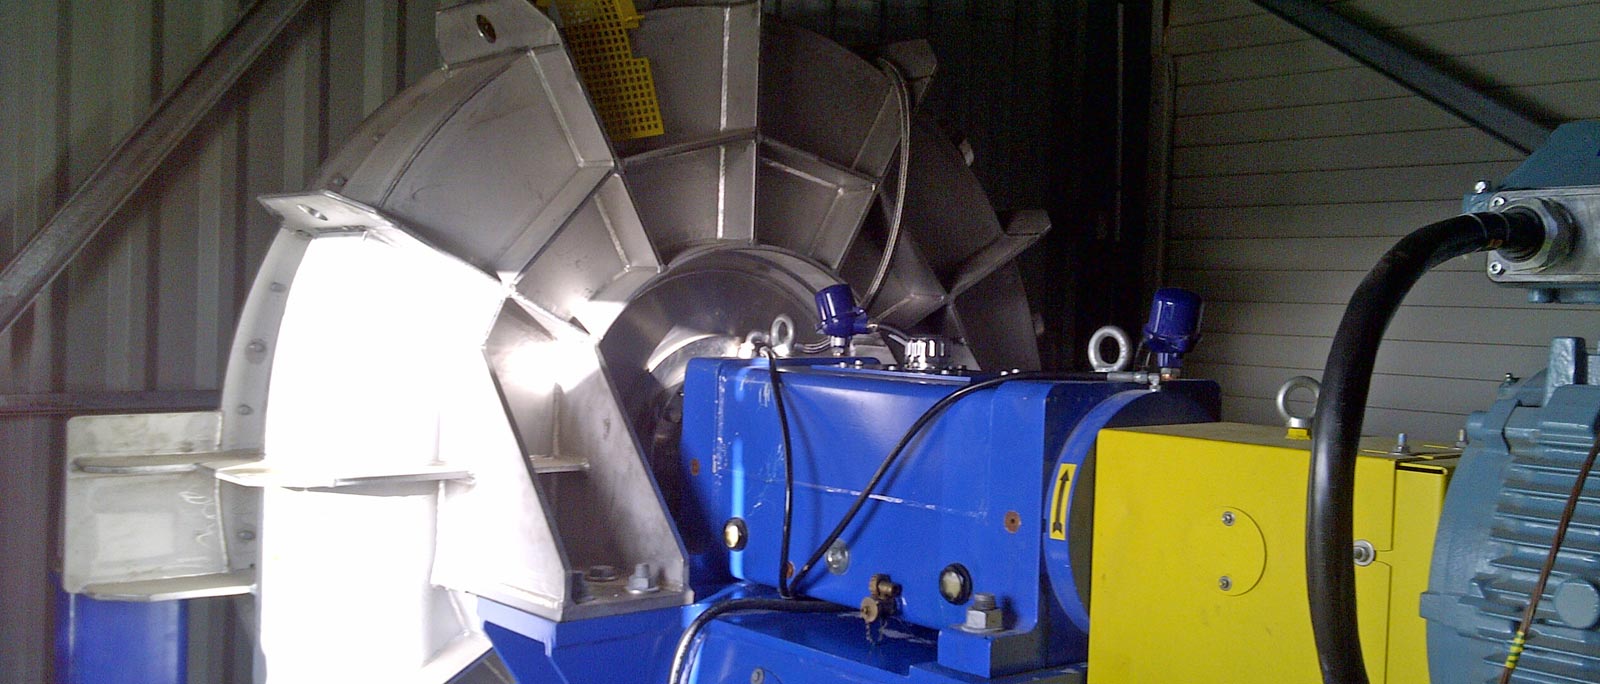 Biome-traitement thermique- technologie à compression mécanique de vapeur